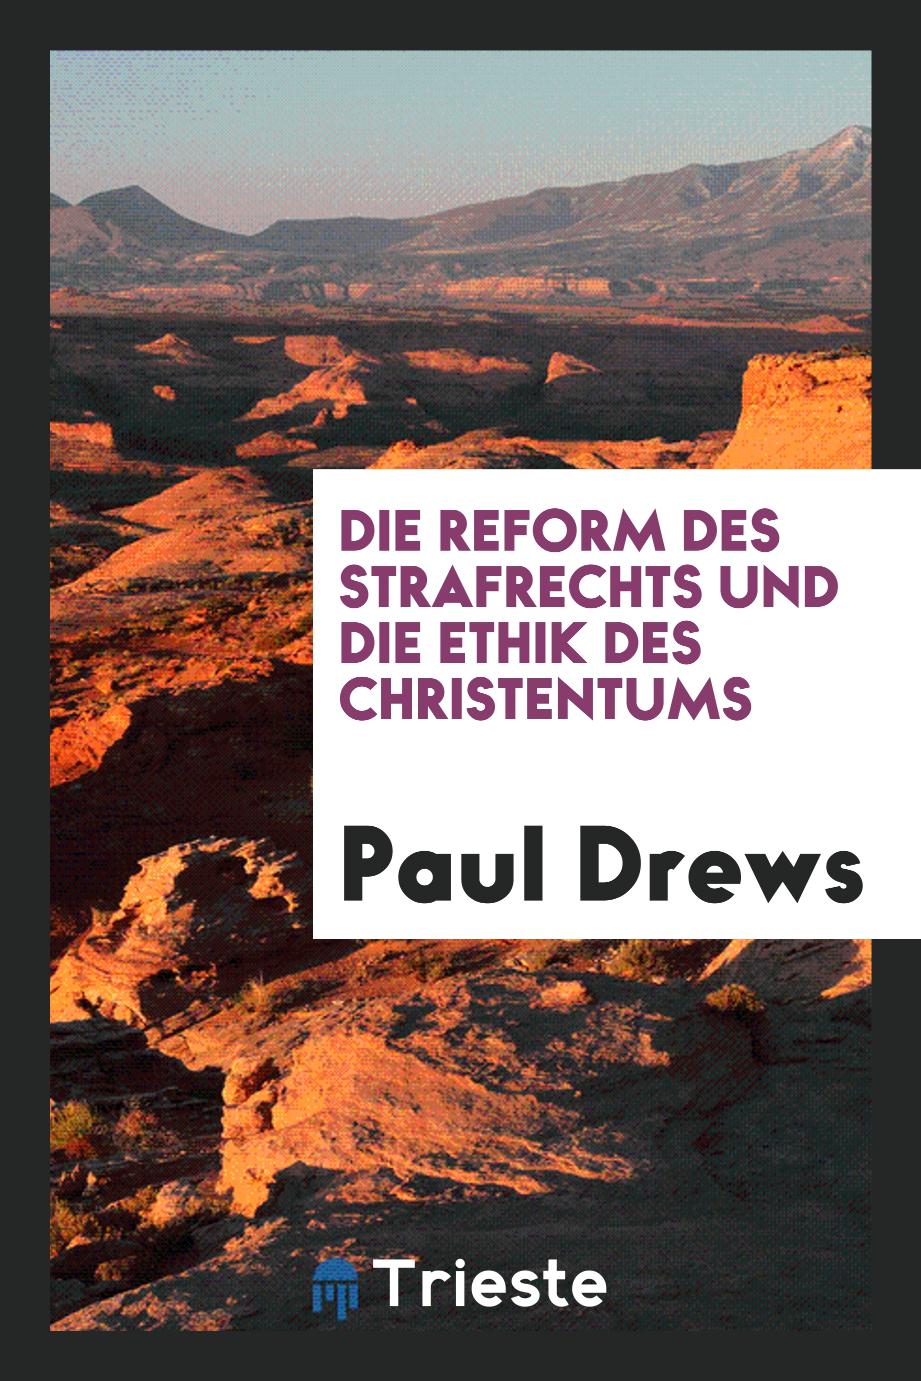 Die Reform des Strafrechts und die Ethik des Christentums